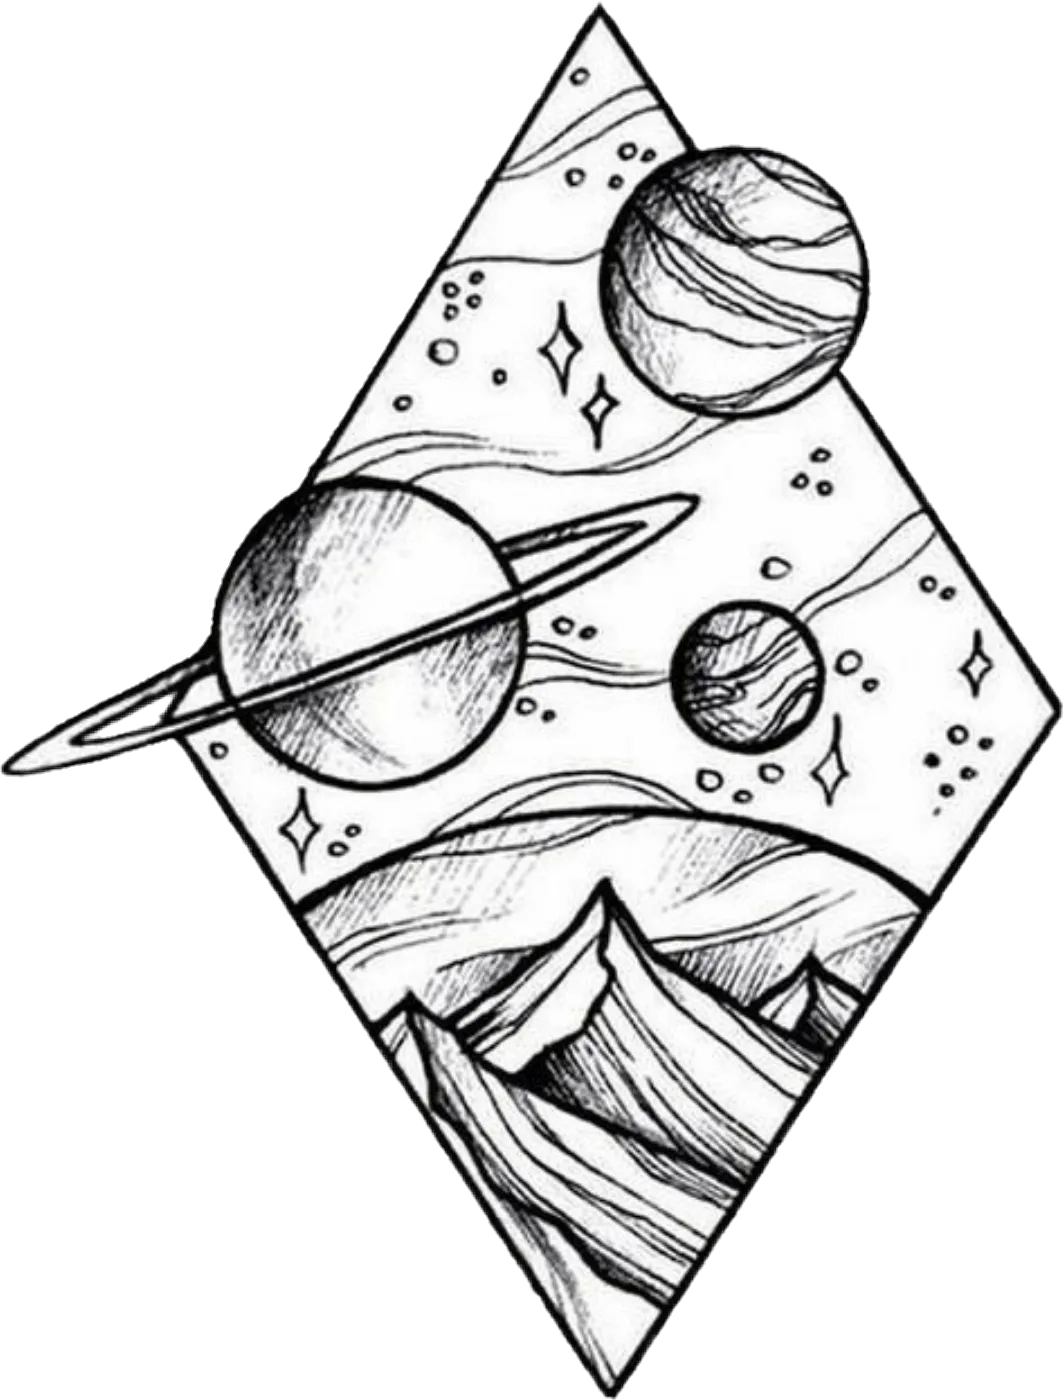 Космос рисунок легкий для срисовки карандашом. Космос скетч. Космос рисунок карандашом. Рисунки космоса для срисовки легкие. Рисунок космос для срисовки.